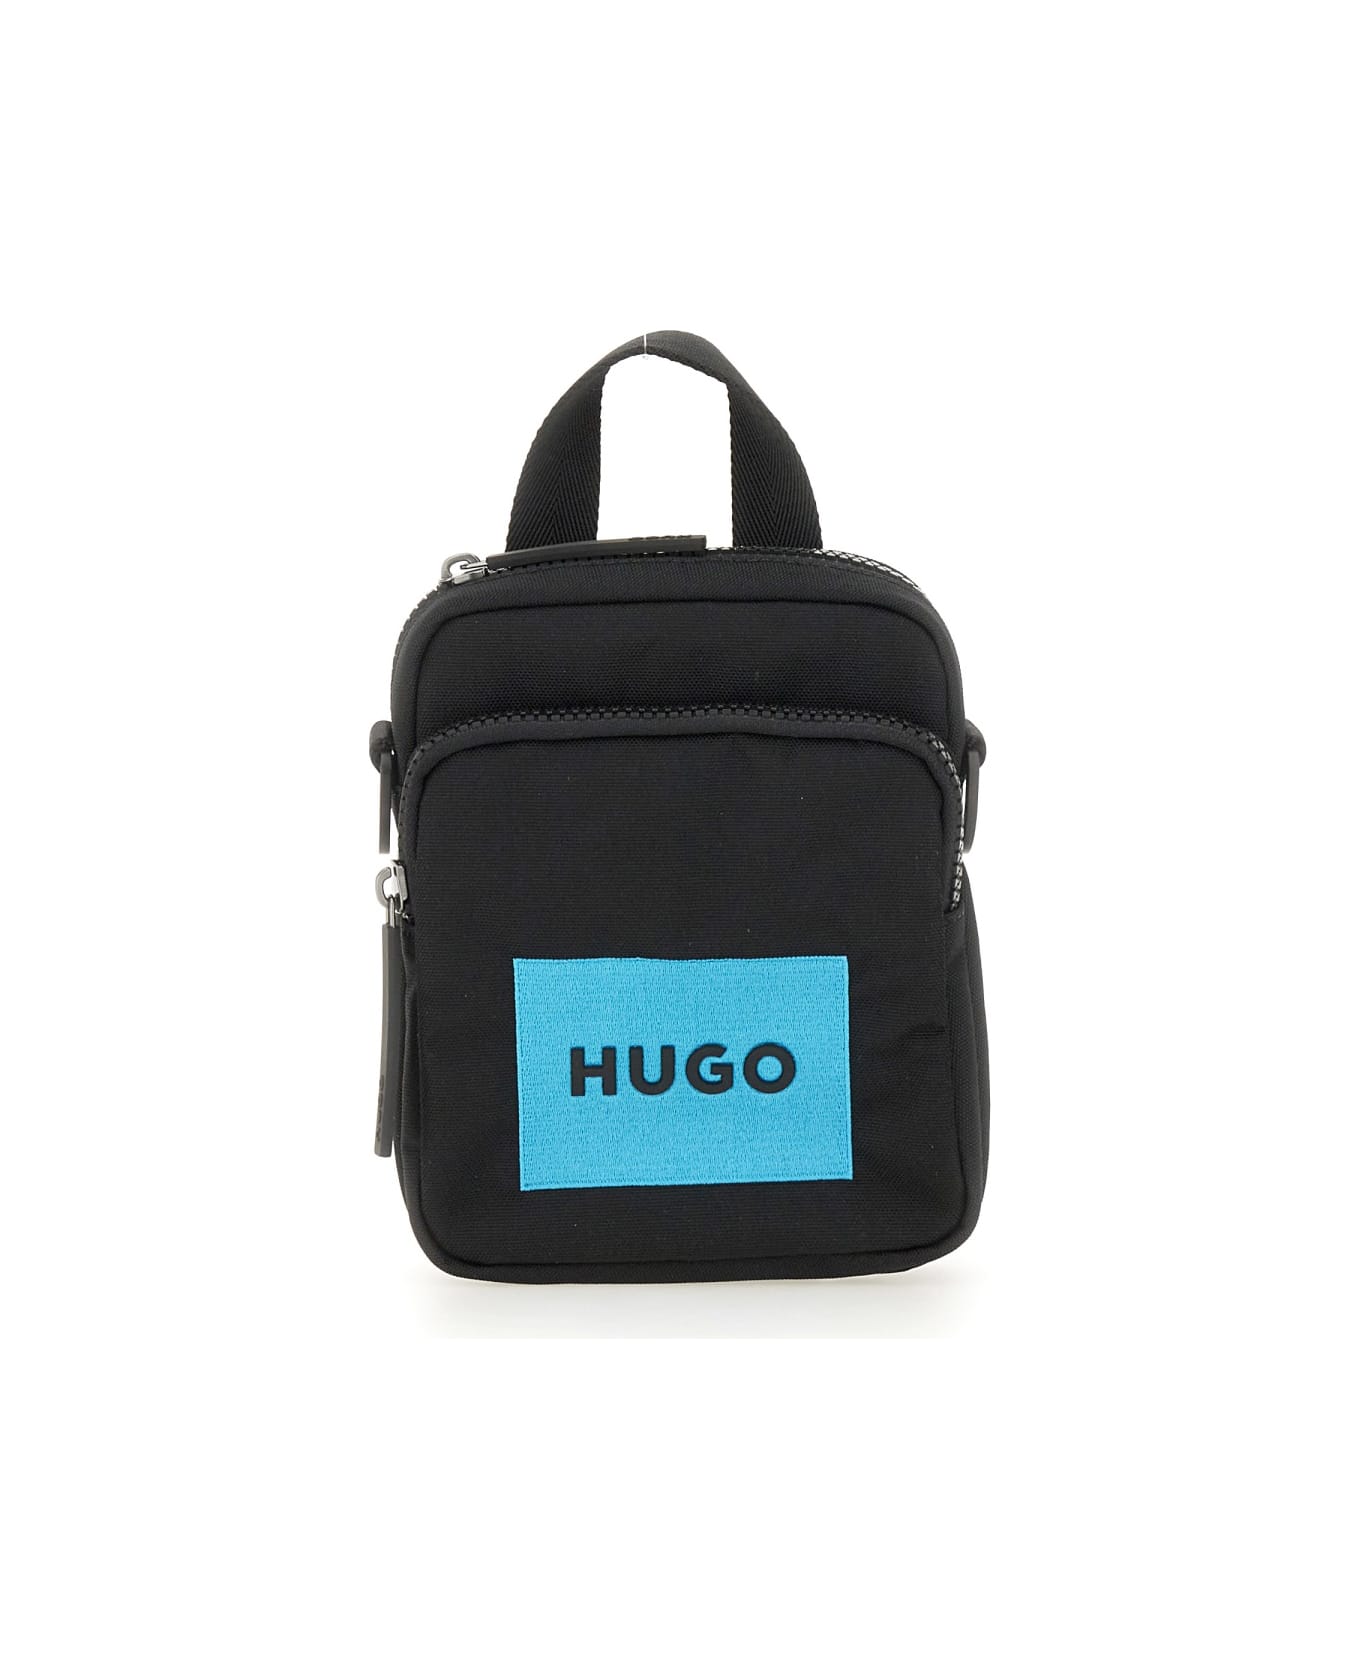 Hugo Boss Shoulder Bag With Logo - BLACK